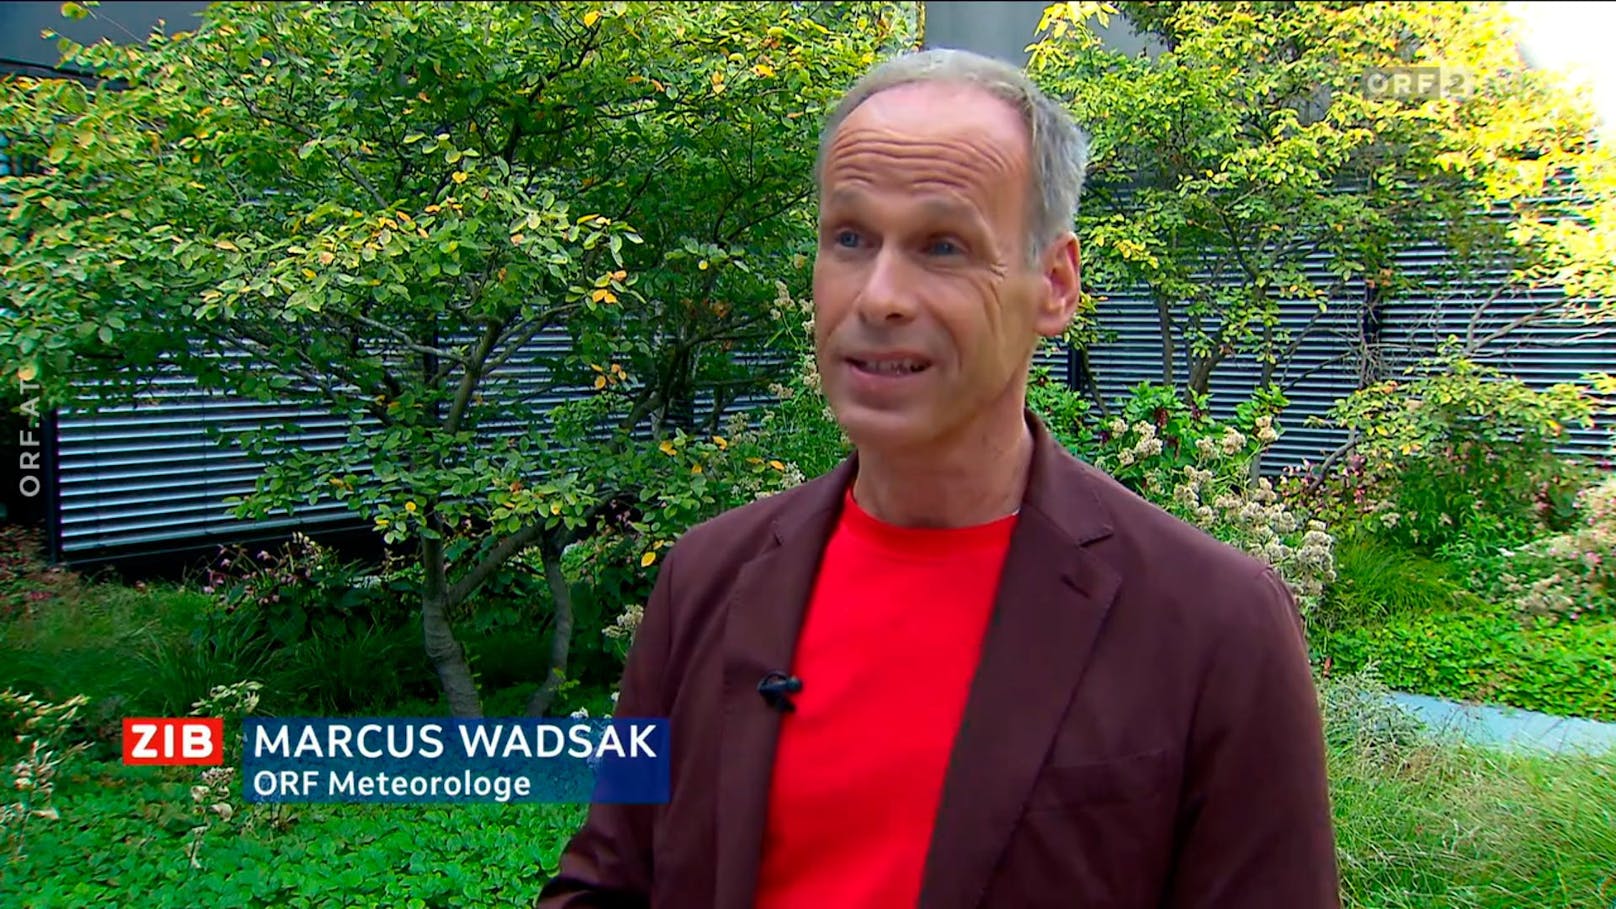 "Nicht darauf vorbereitet" – Wadsak lässt im ORF aufhorchen